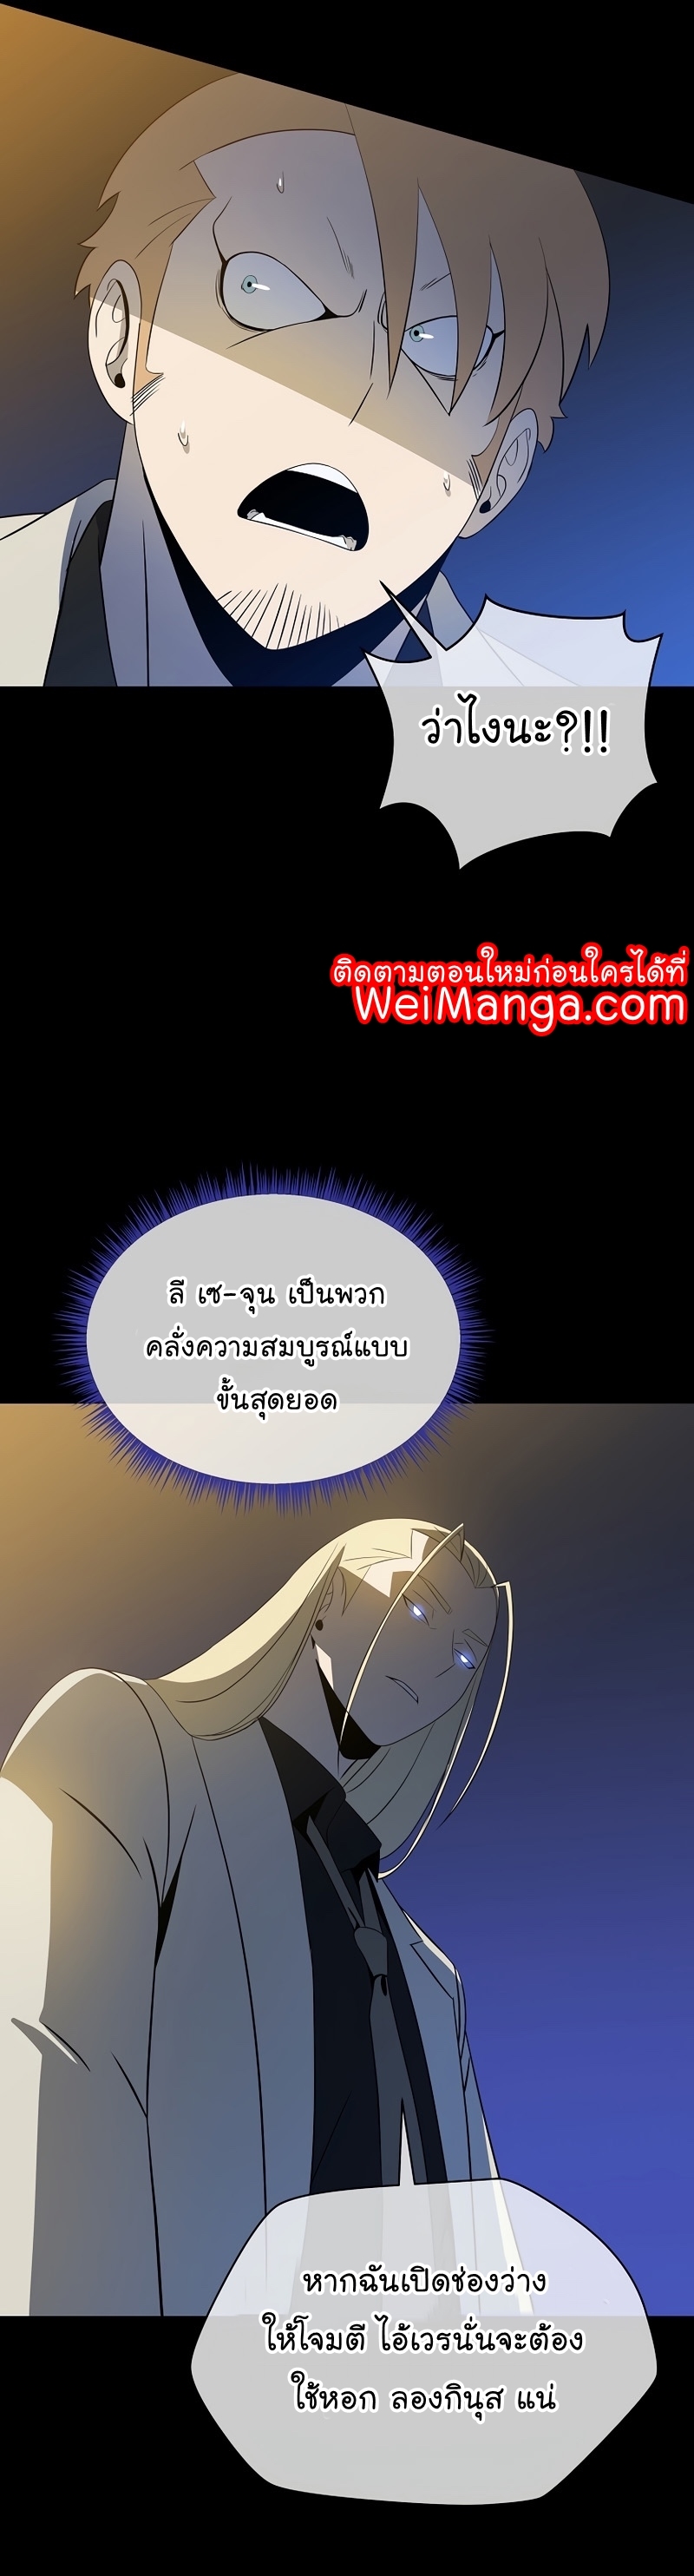 Kill the Hero Manga Wei Manhwa 139 (29)